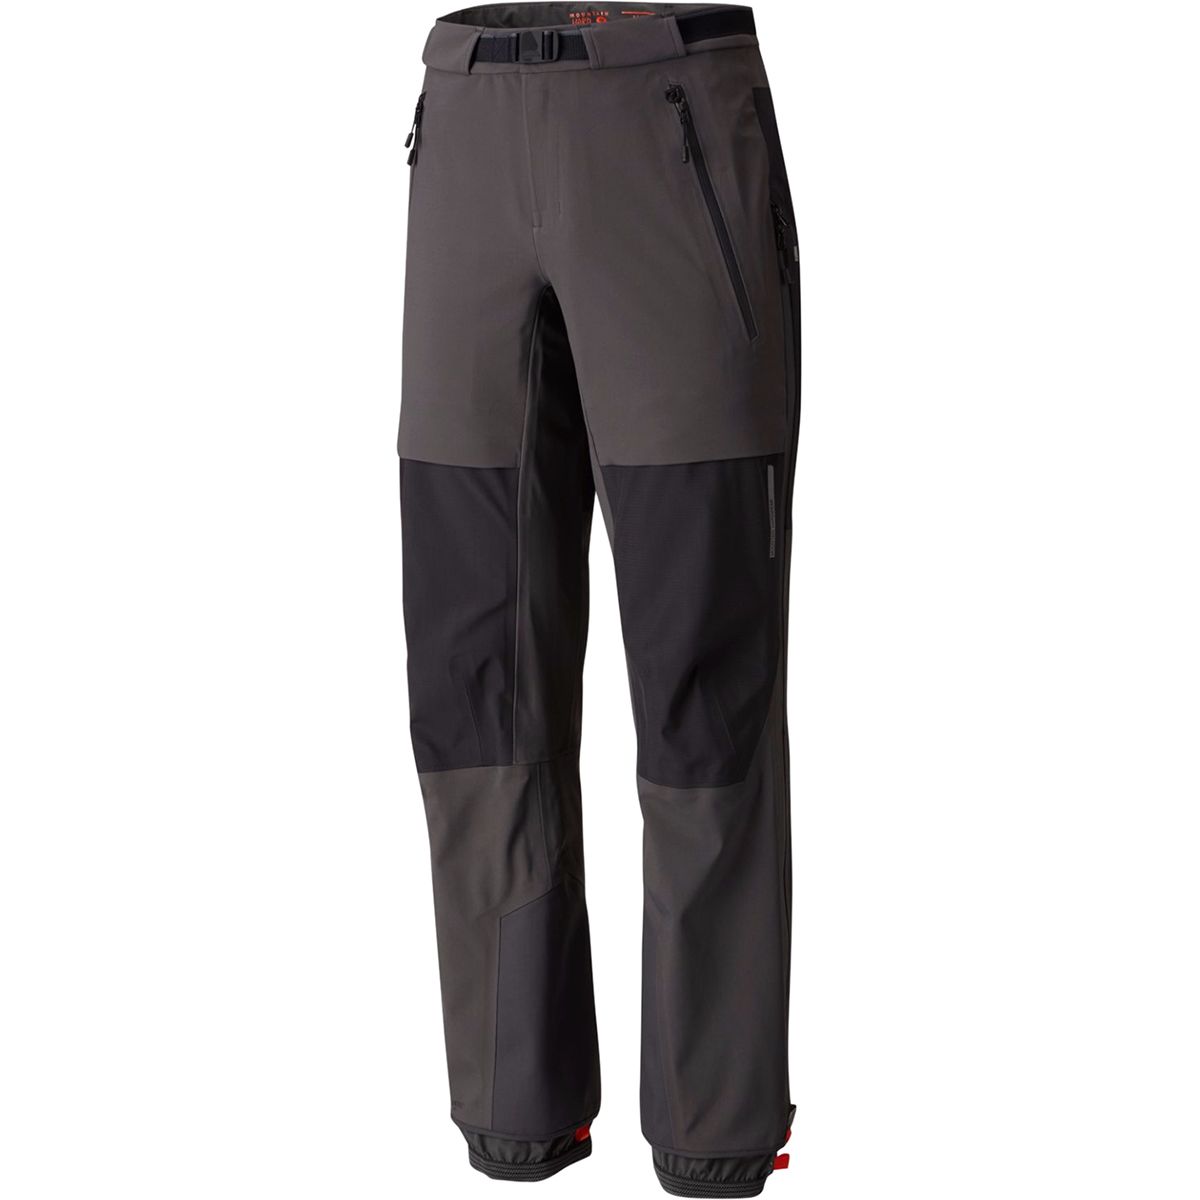 Mountain Hardwear Cyclone Pant - Men's - Clothing